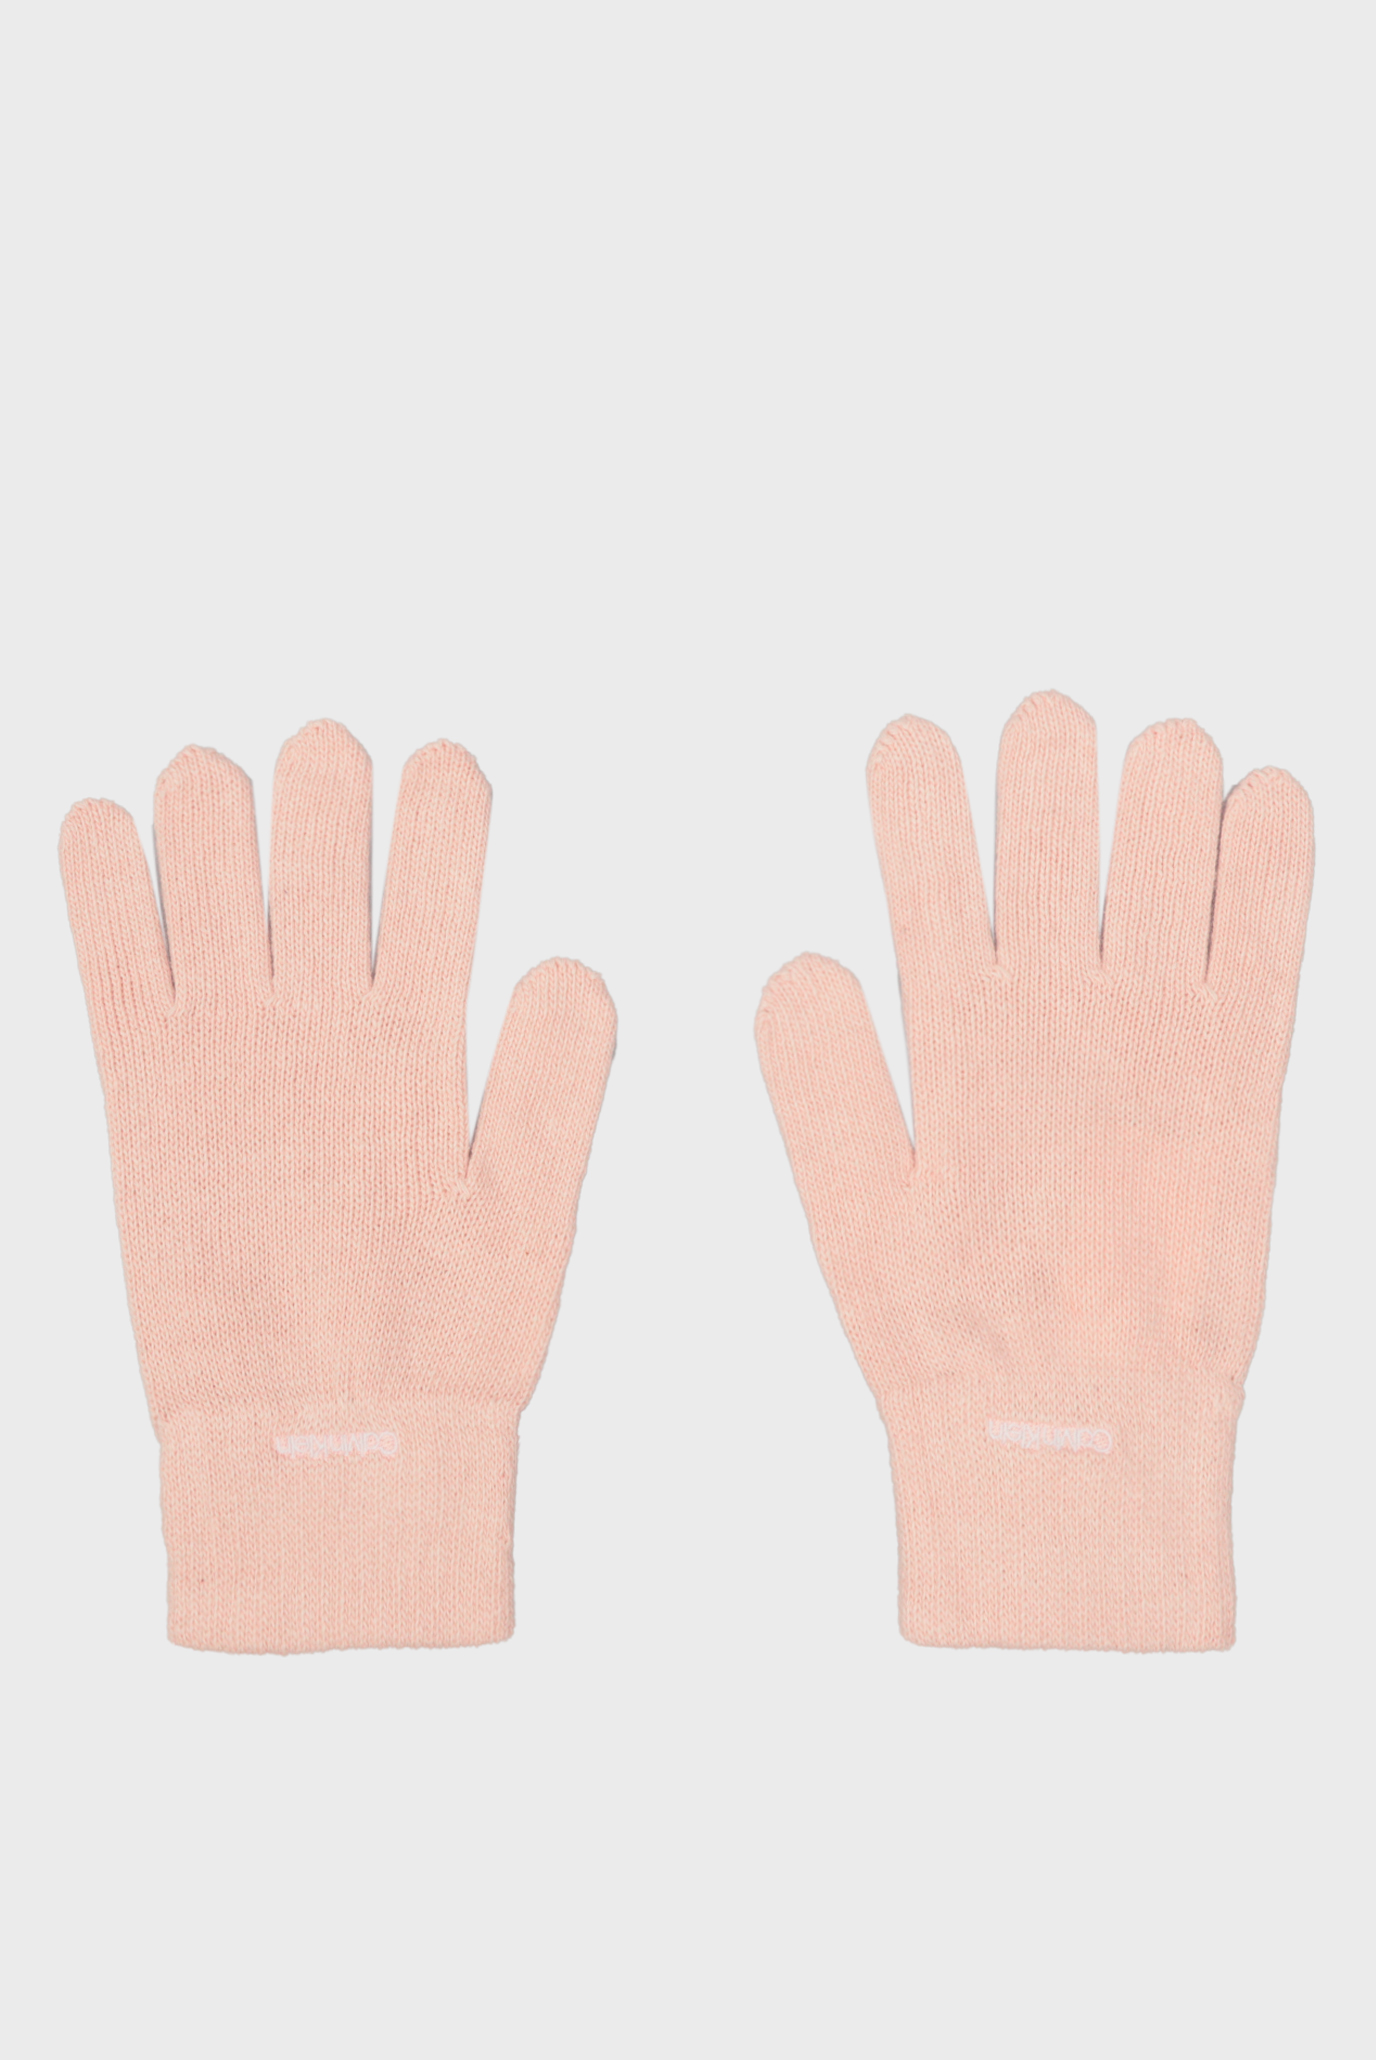 Жіночі персикові рукавички ORGANIC RIBS GLOVES 1